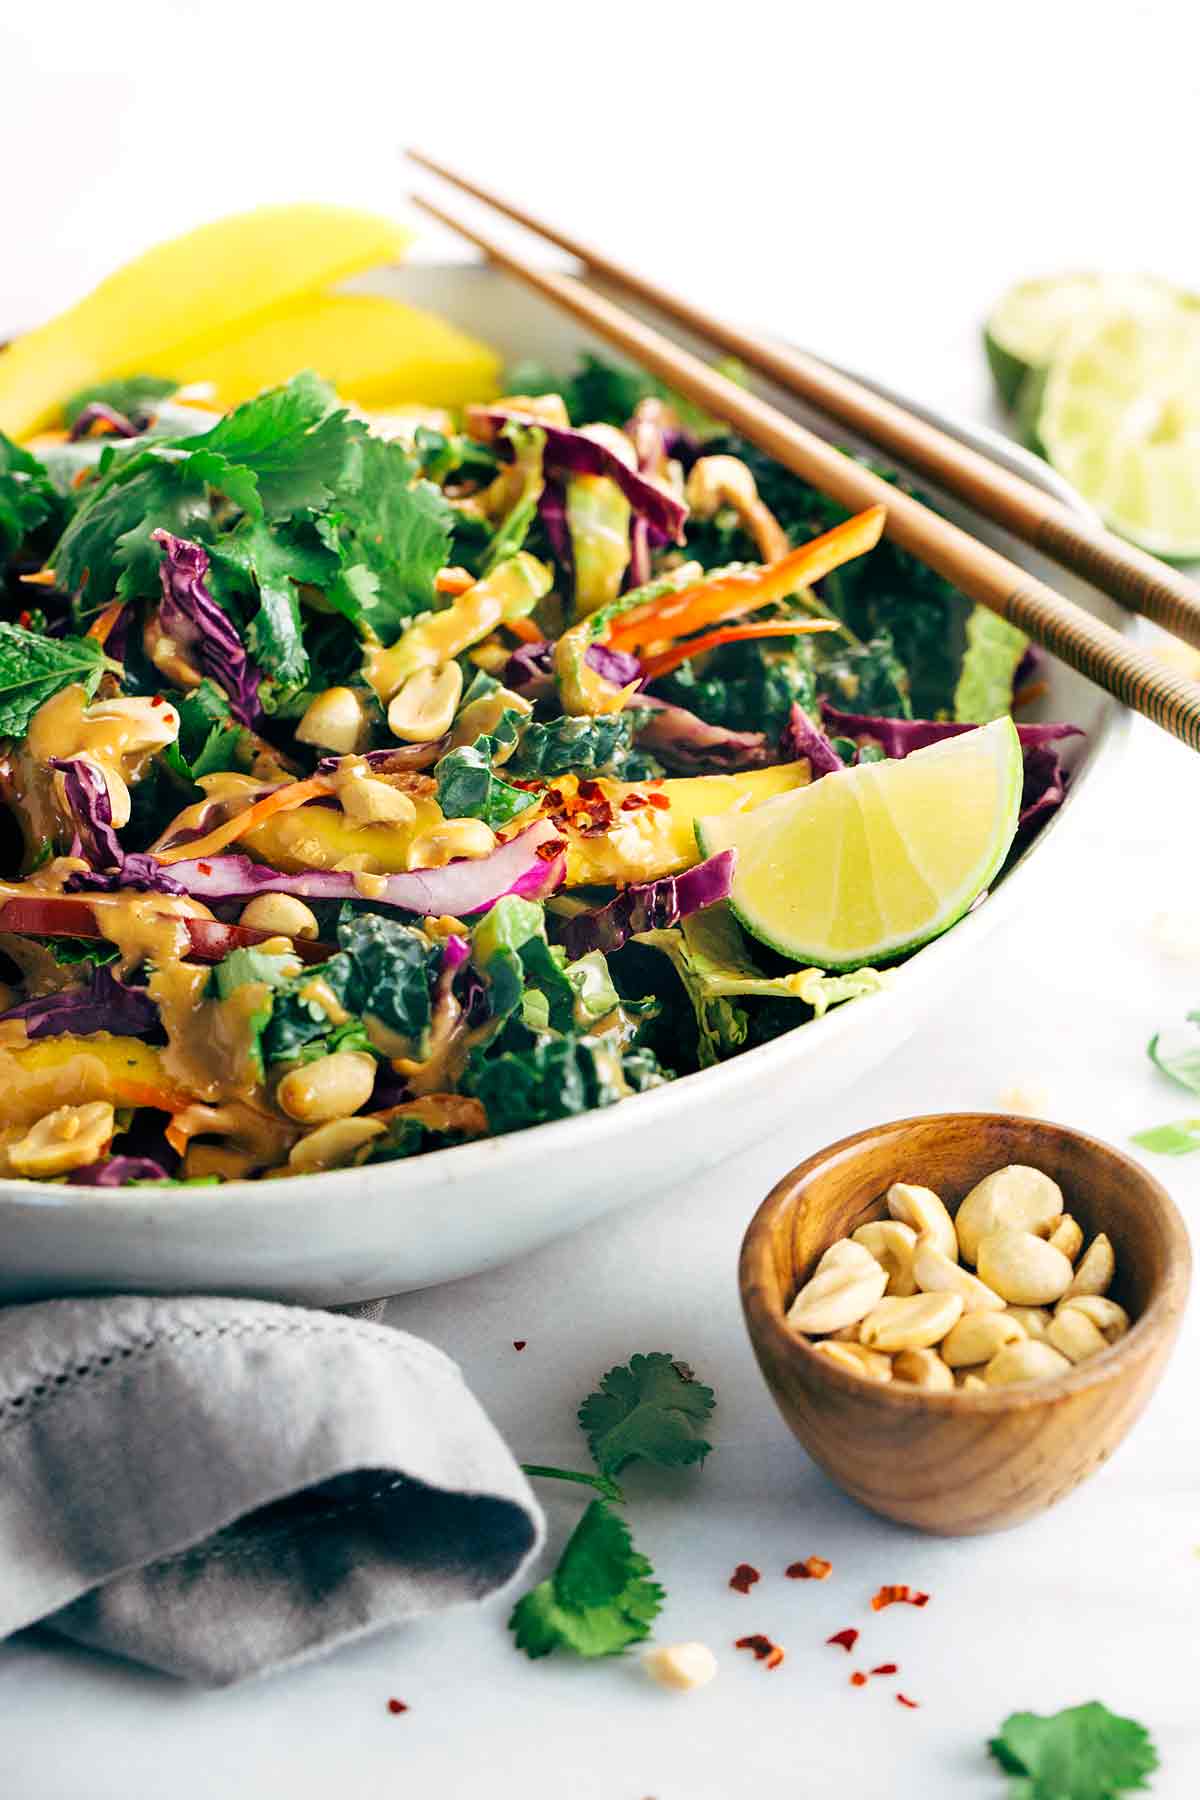 Bigs reccomend Asian peanut salad dressing recipe